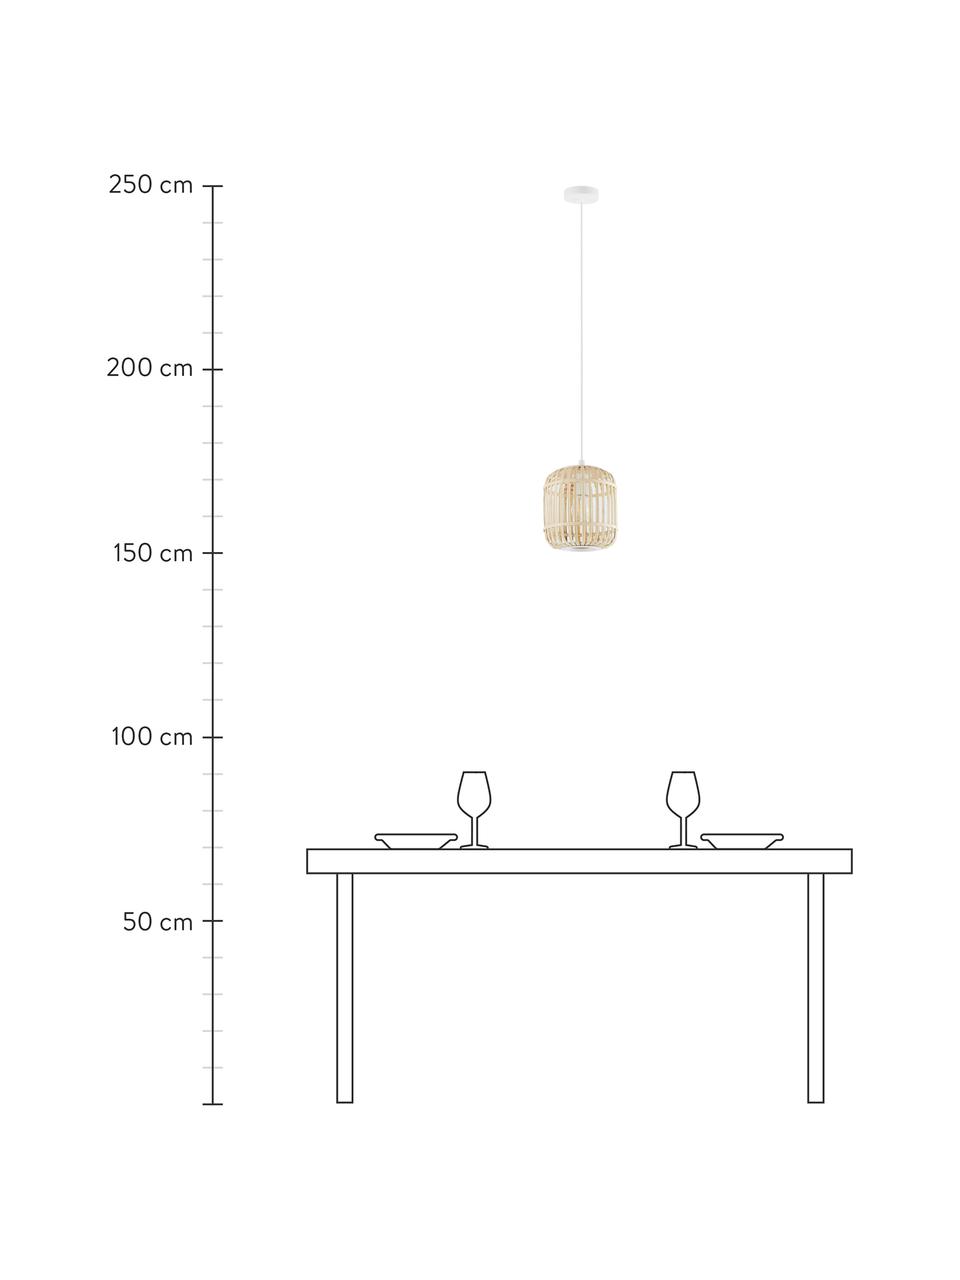 Lampa wisząca z drewna bambusowego Adam, Biały, drewno bambusowe, Ø 21 x W 24 cm